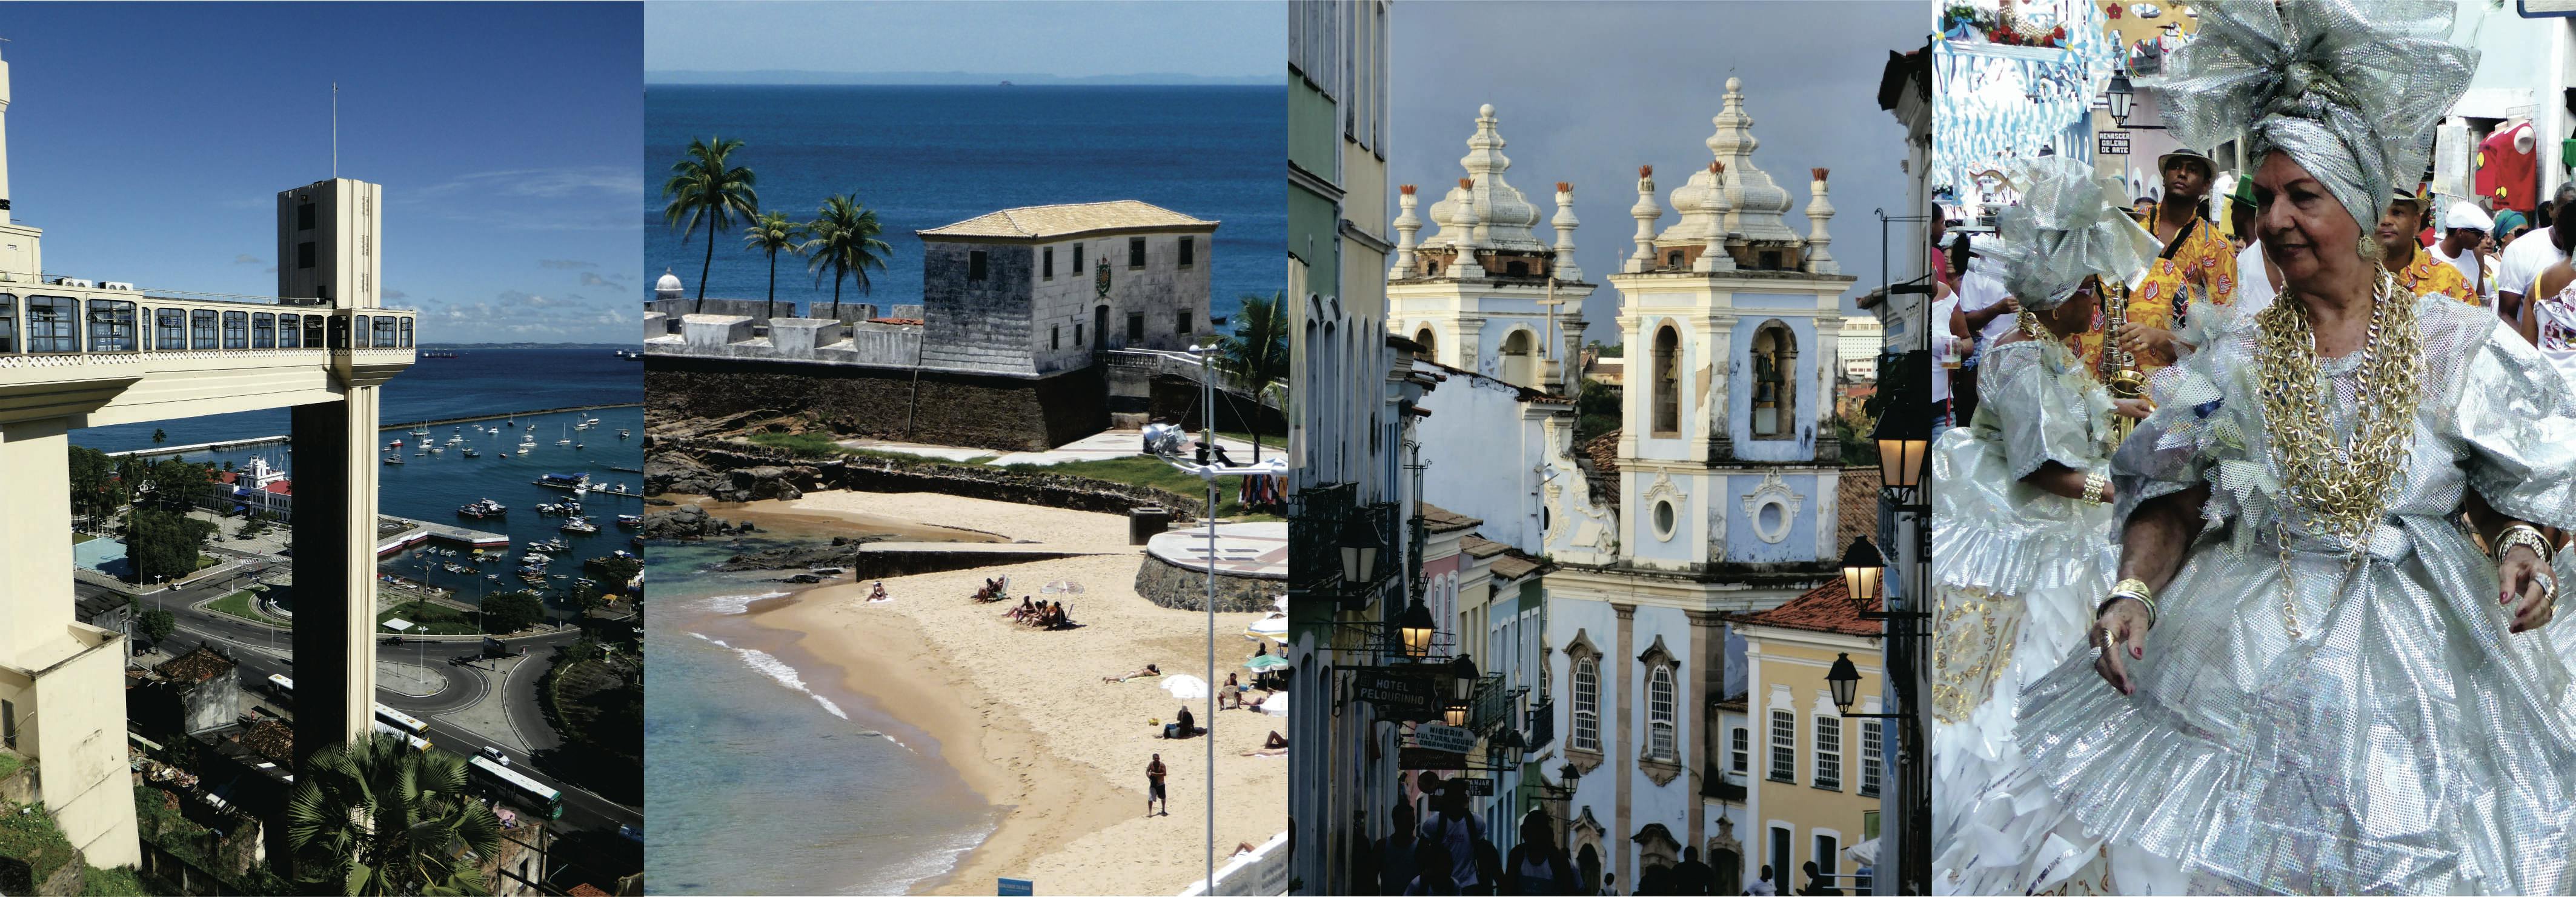 montagem fotográfico elementos turísticos Salvador Bahia